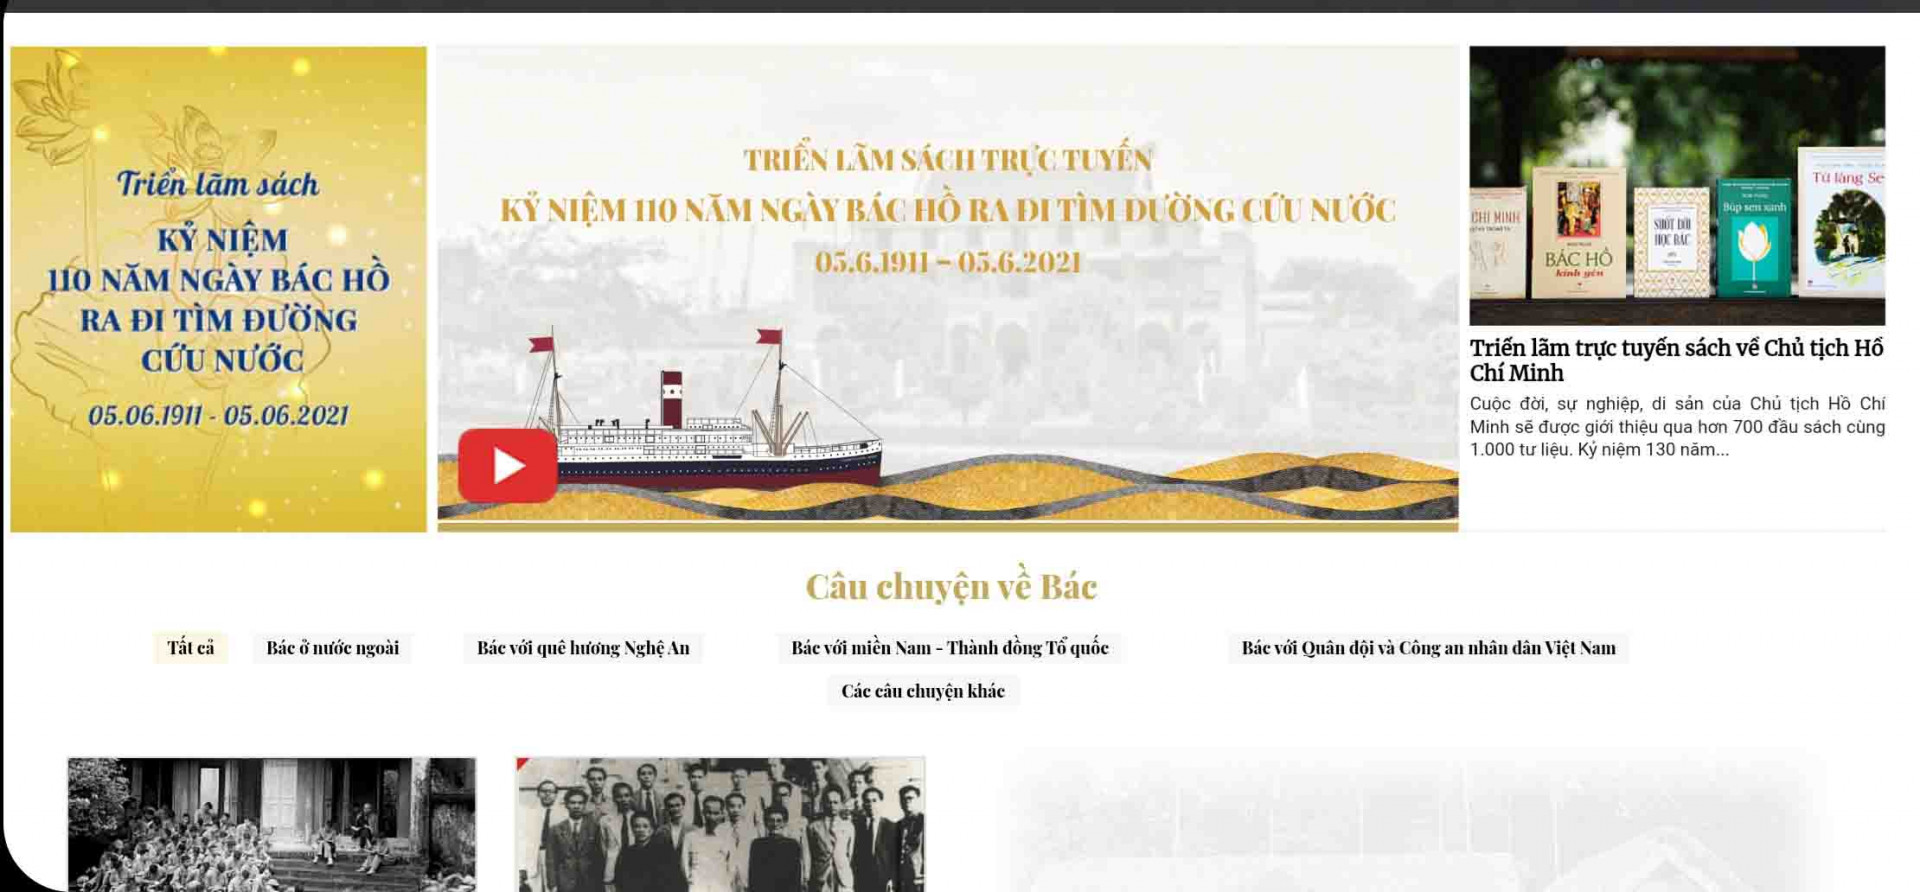 Giao diện của sàn Book365.vn giới thiệu về triển lãm sách trực tuyến kỷ niệm 110 năm Ngày Bác Hồ ra đi tìm đường cứu nước. 